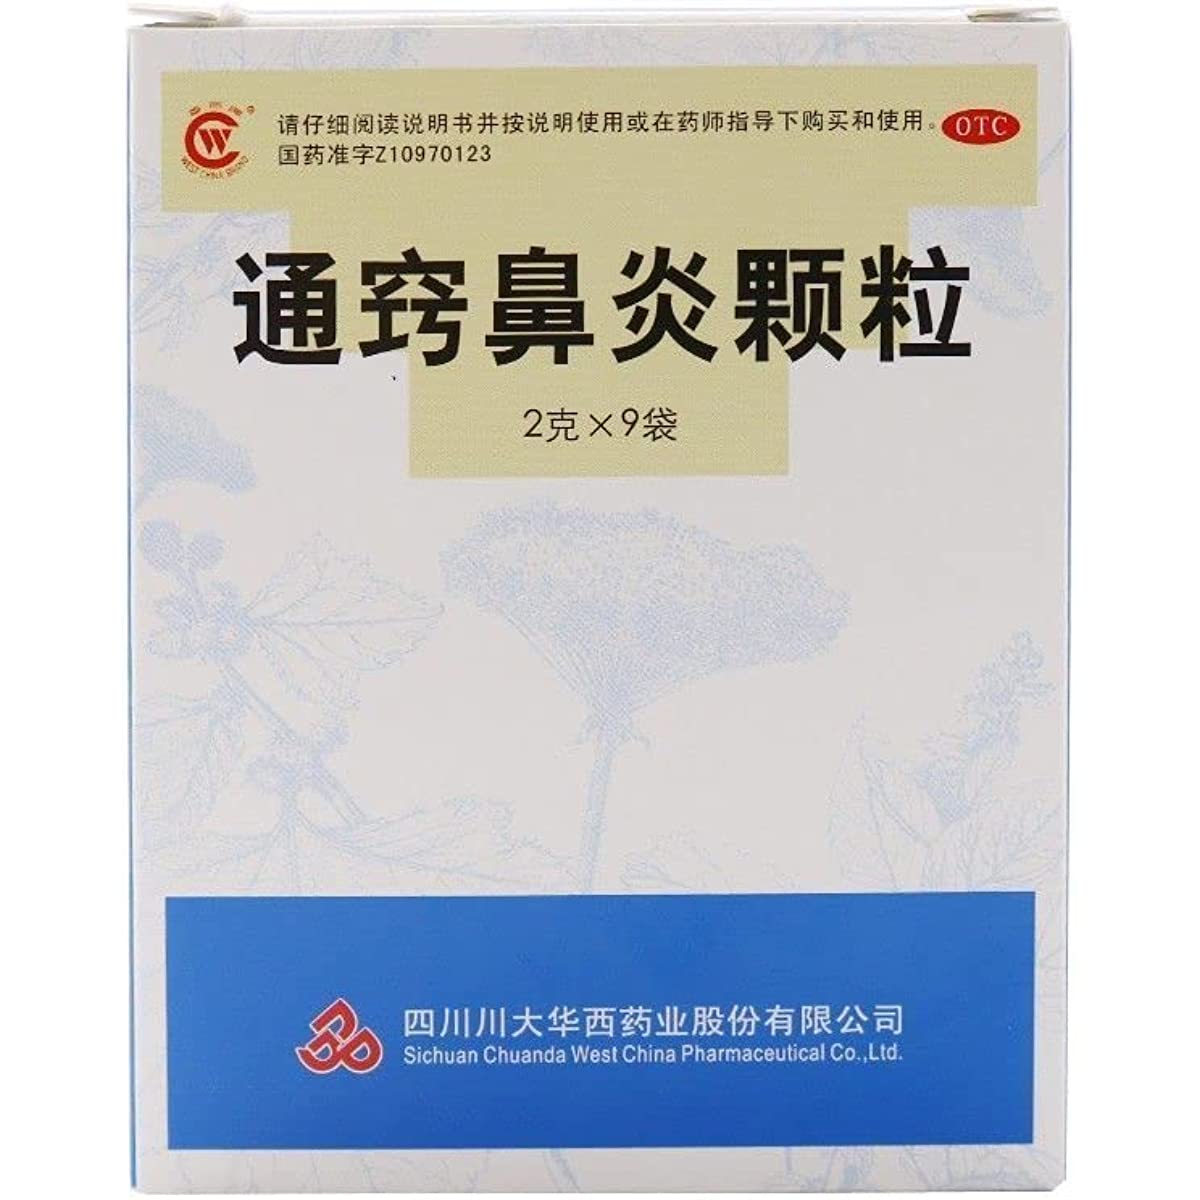 1 Box, Tongqiao Biyan Keli 9 Bags / Box 通窍鼻炎颗粒